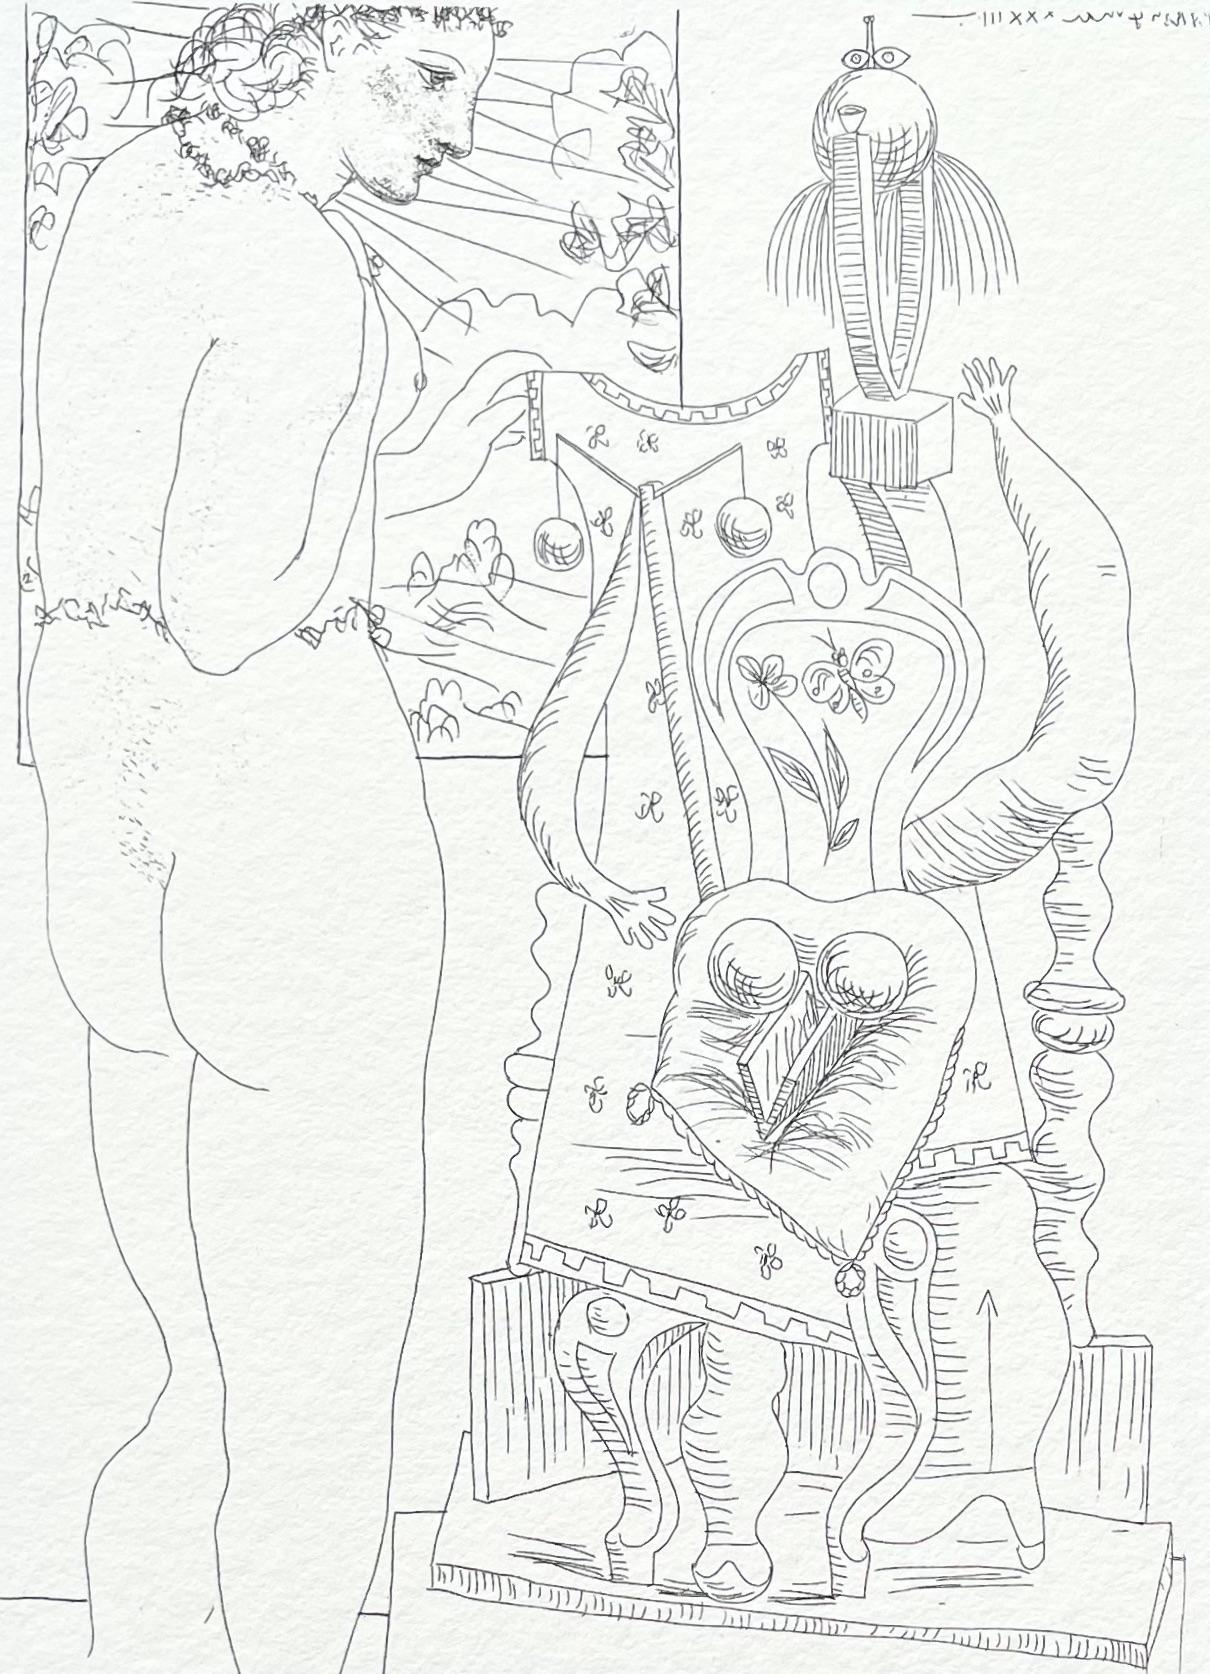 Nude Print Pablo Picasso - Picasso, Marie-Thérèse considérant son Effigie surréaliste sculptée (d'après)